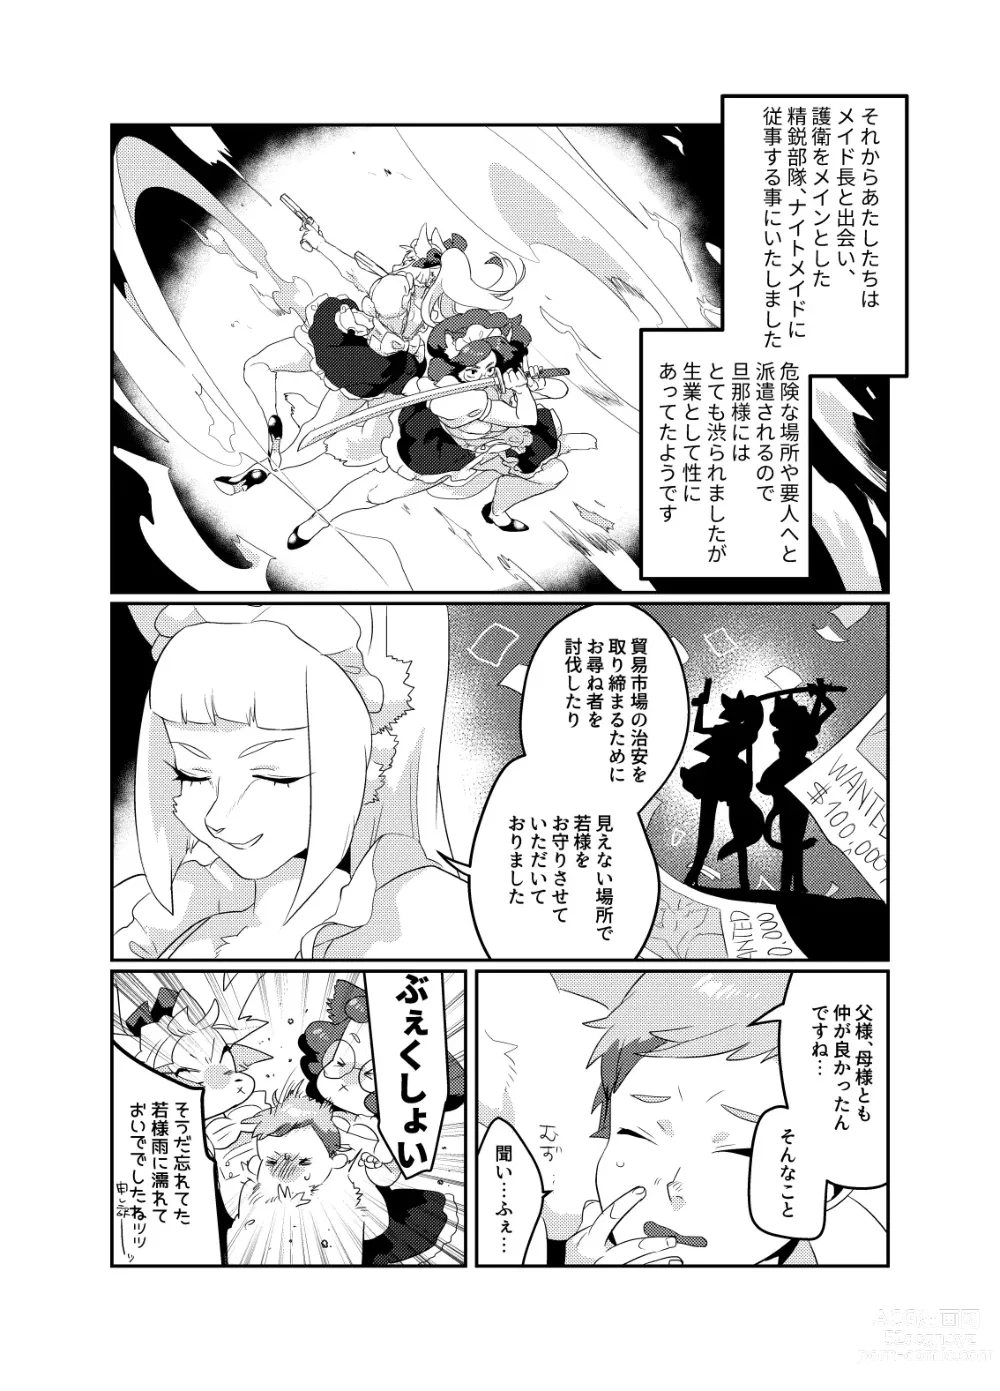 Page 14 of doujinshi Meido inHEAVEN